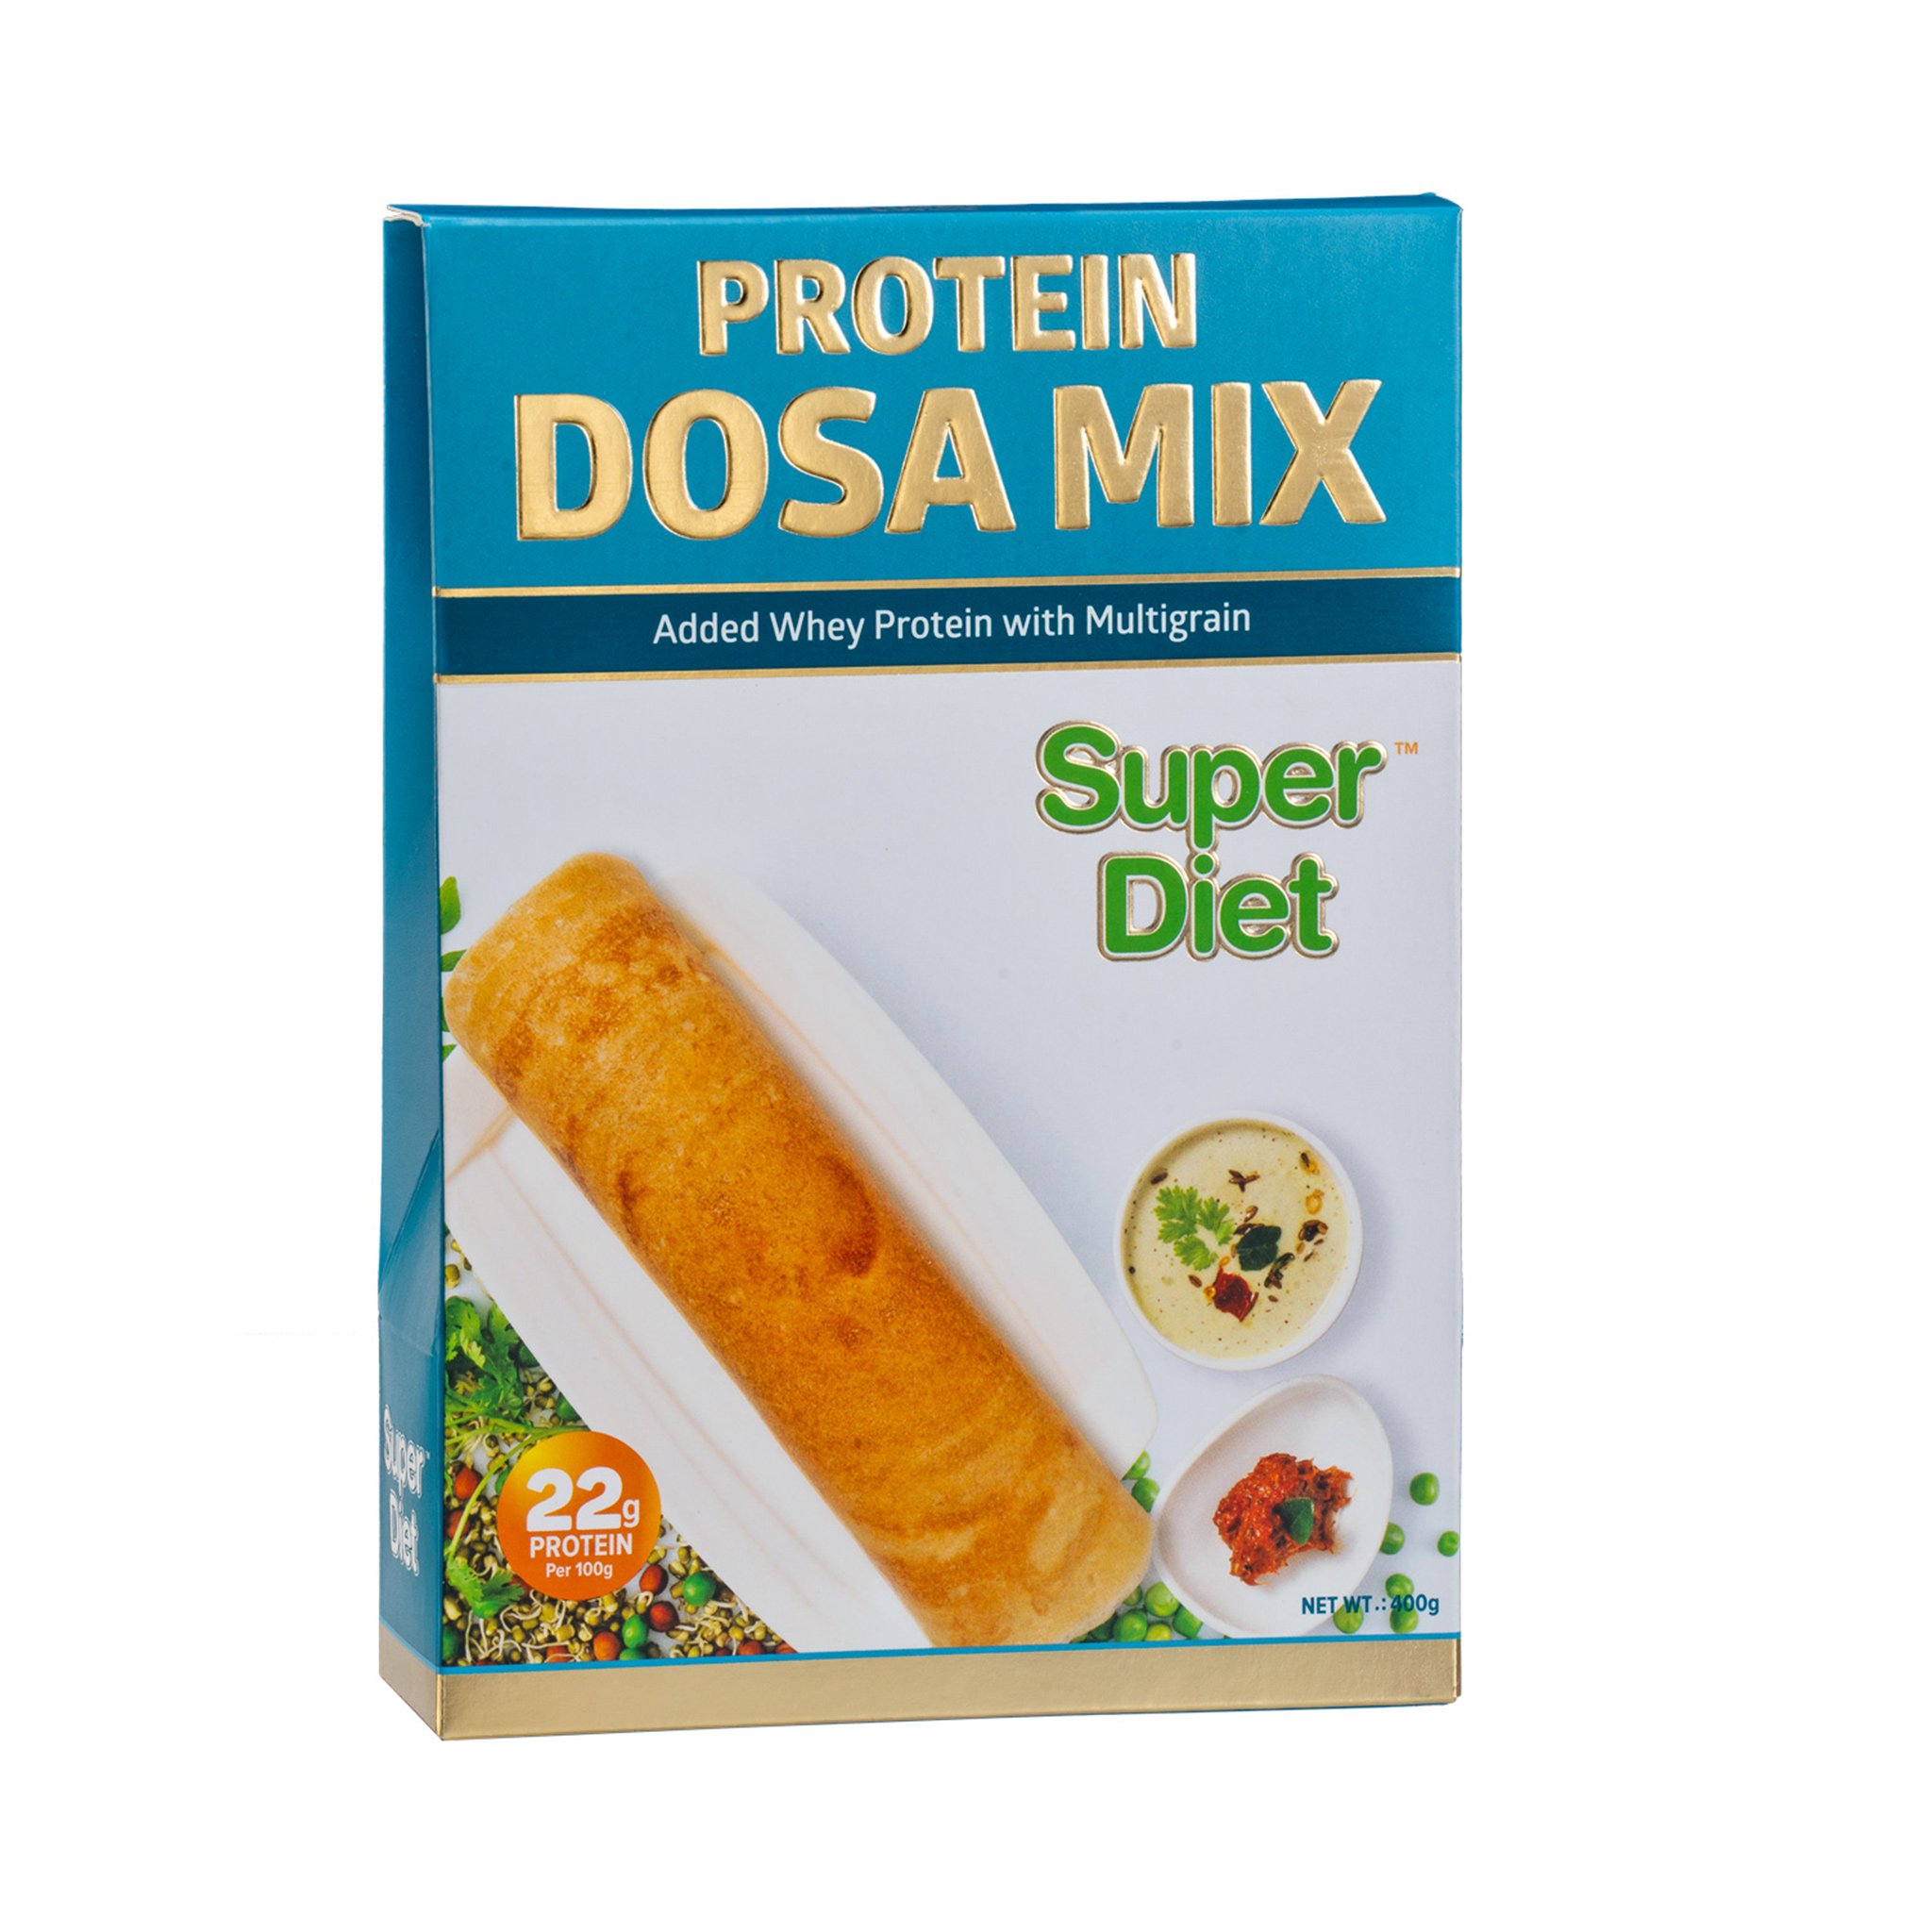 Super Diet PROTEIN DOSA MIX 400g